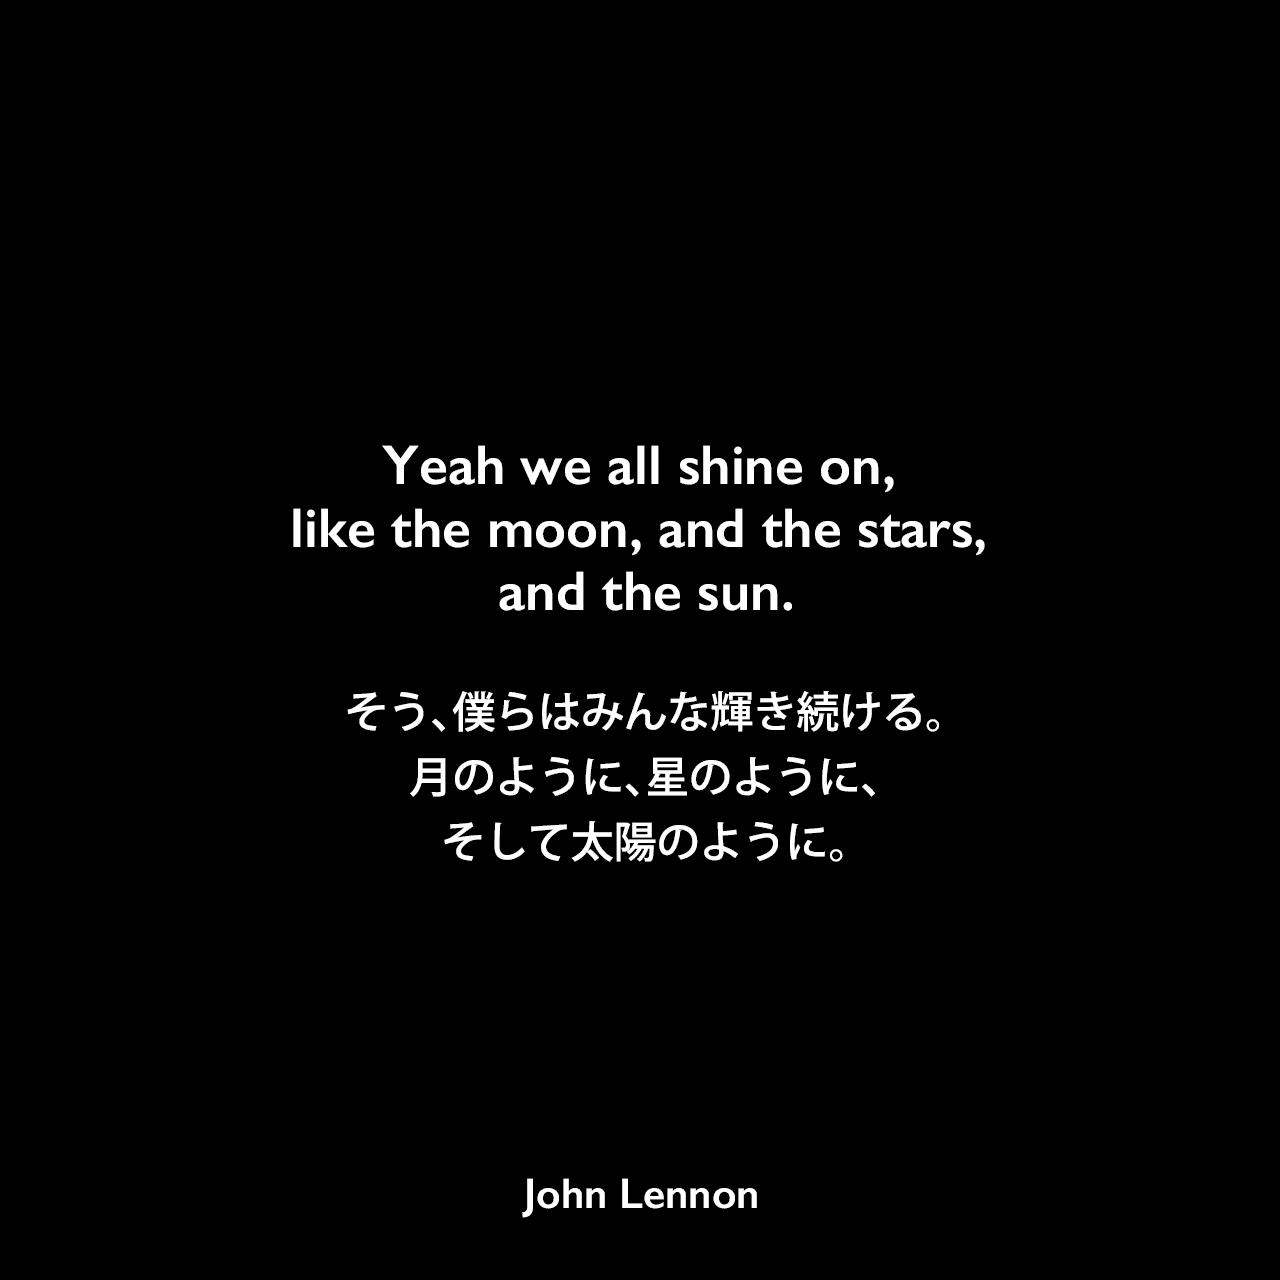 Yeah we all shine on, like the moon, and the stars, and the sun.そう、僕らはみんな輝き続ける。月のように、星のように、そして太陽のように。- ジョン・レノン作詞・作曲「Instant Karma!」よりJohn Lennon